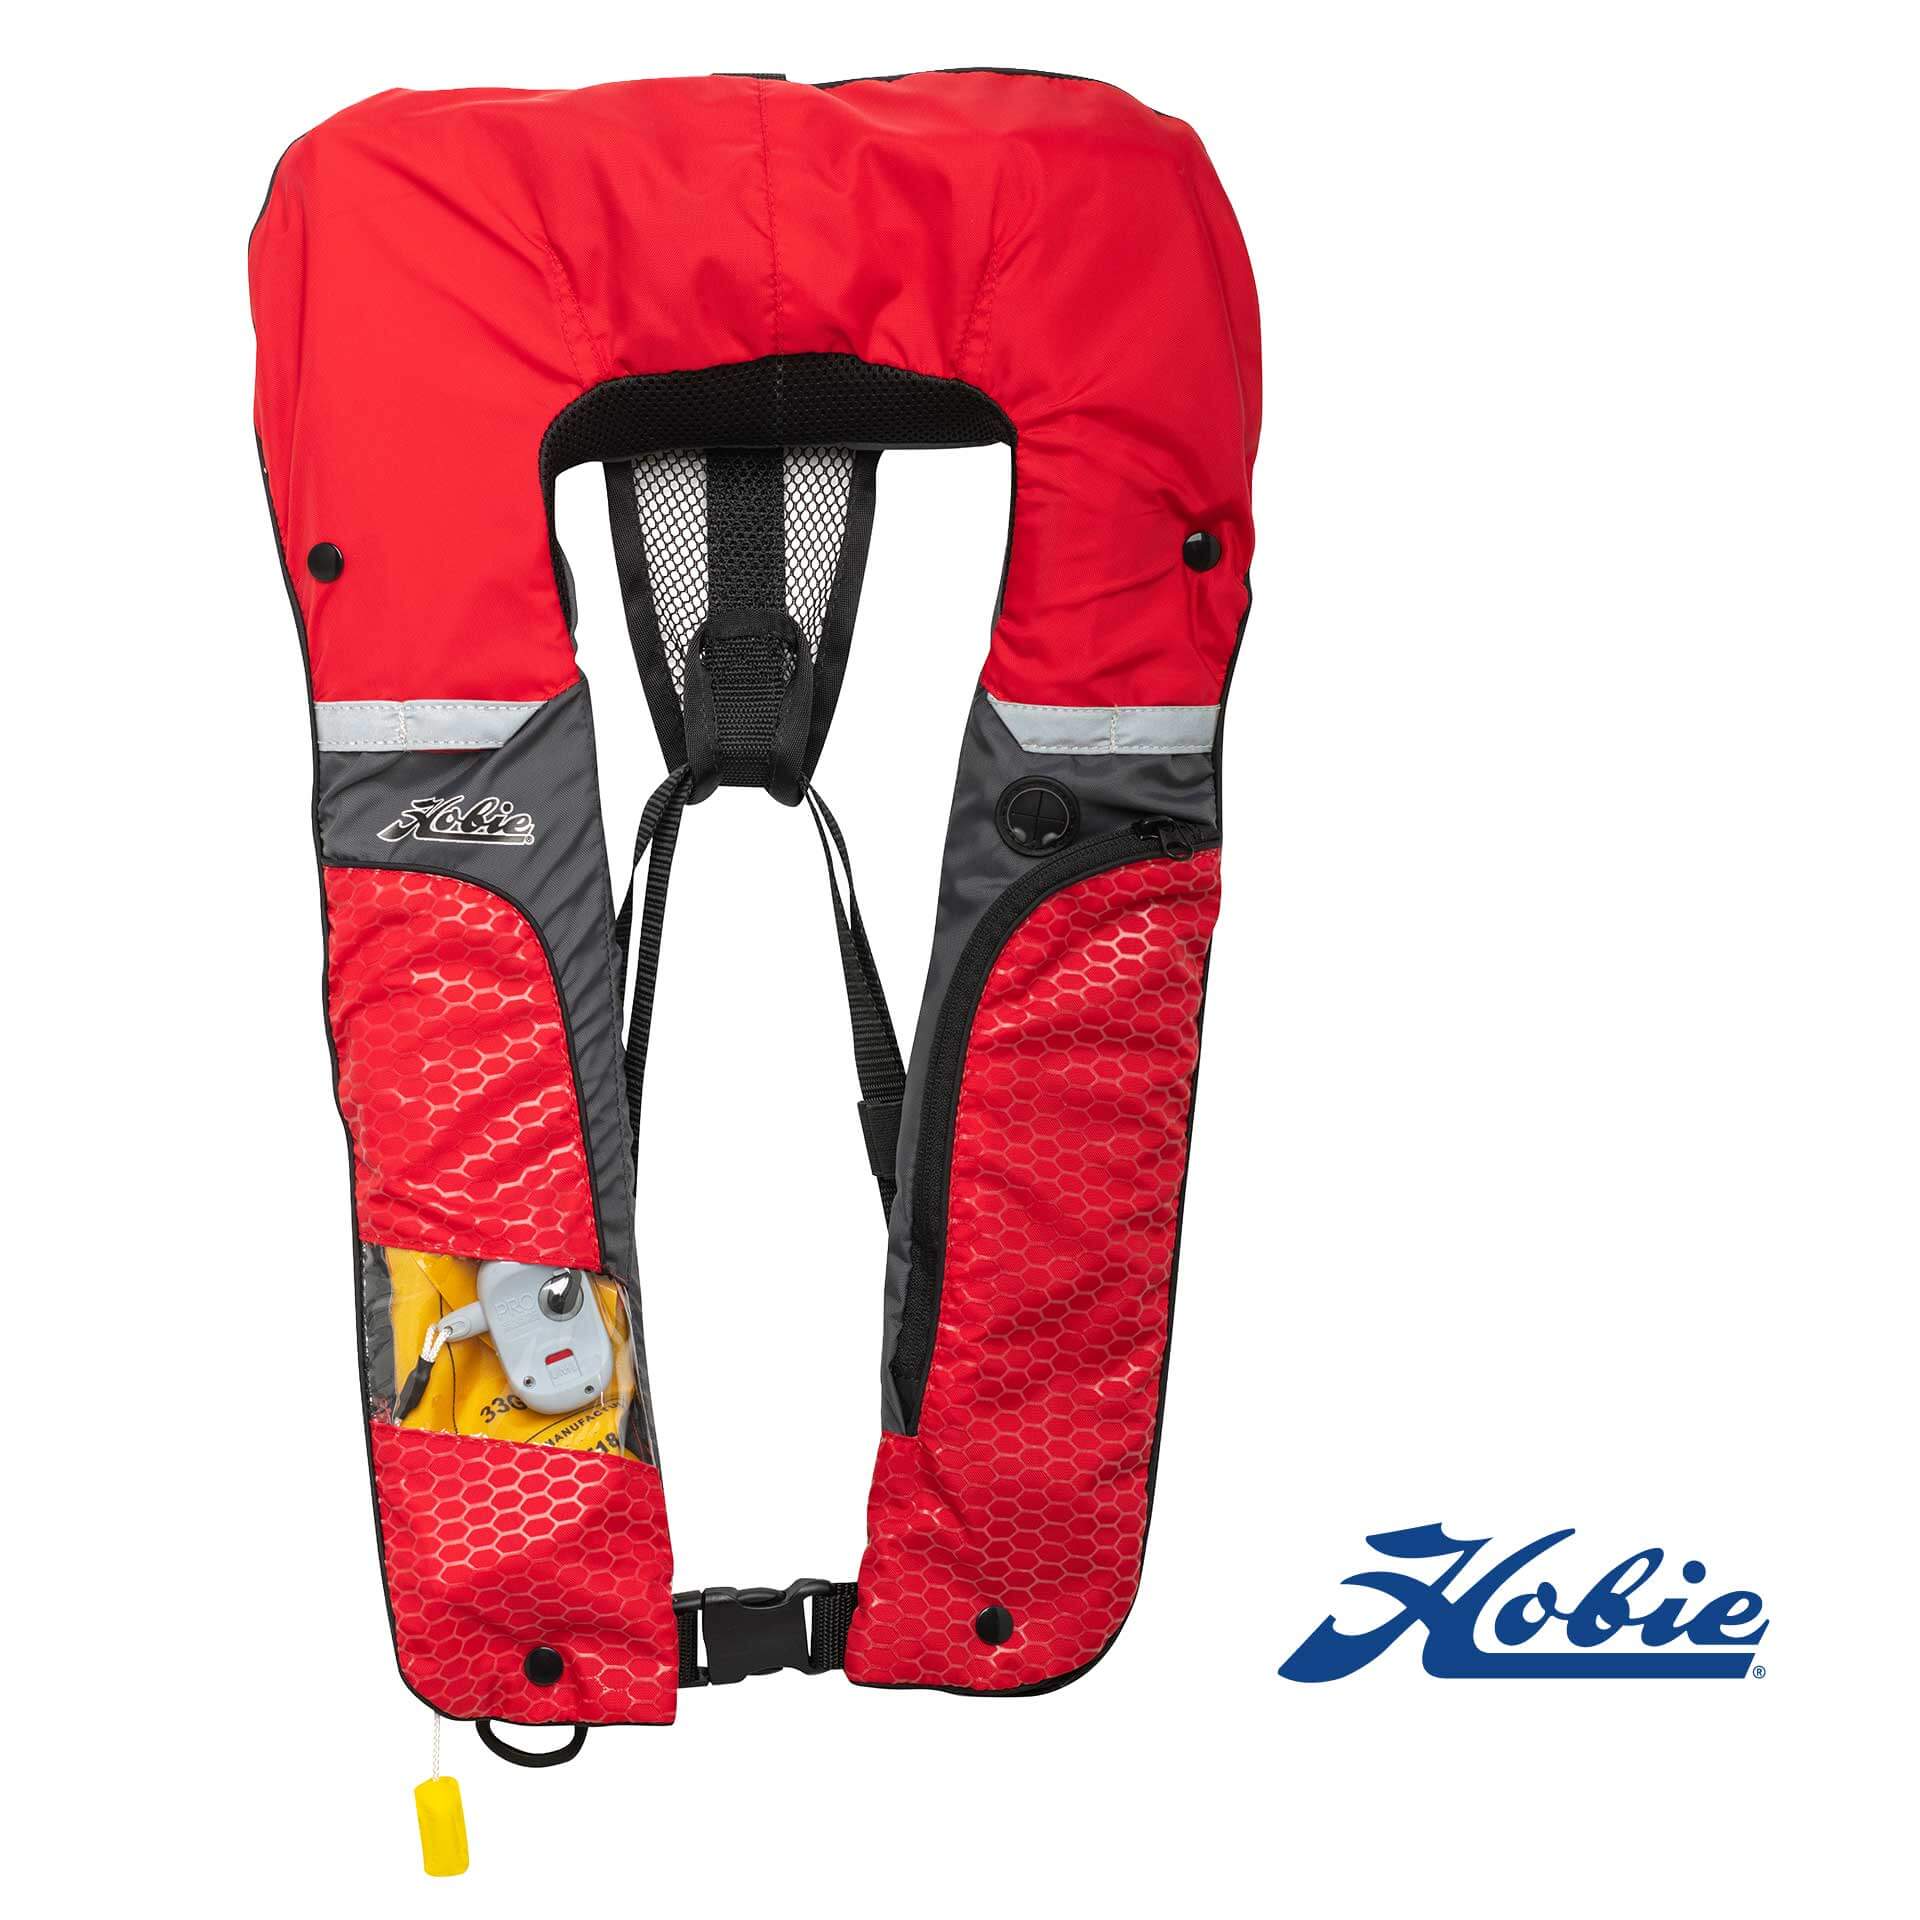 Hobie - Hobie I-Yoke Inflatable 150 Vest - Red